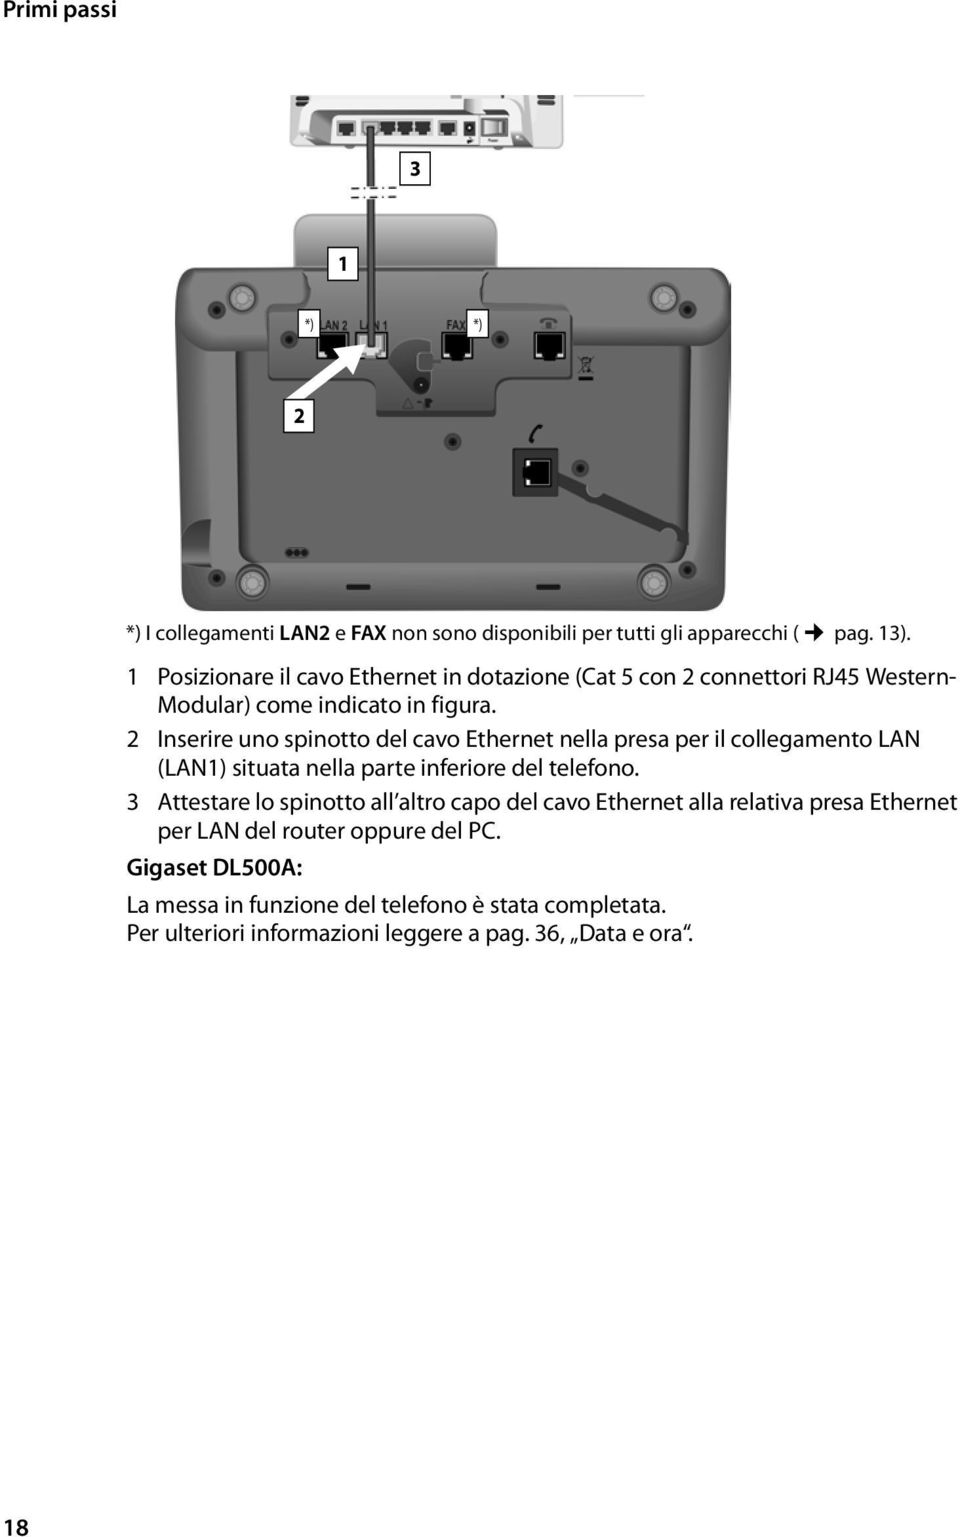 2 Inserire uno spinotto del cavo Ethernet nella presa per il collegamento LAN (LAN1) situata nella parte inferiore del telefono.